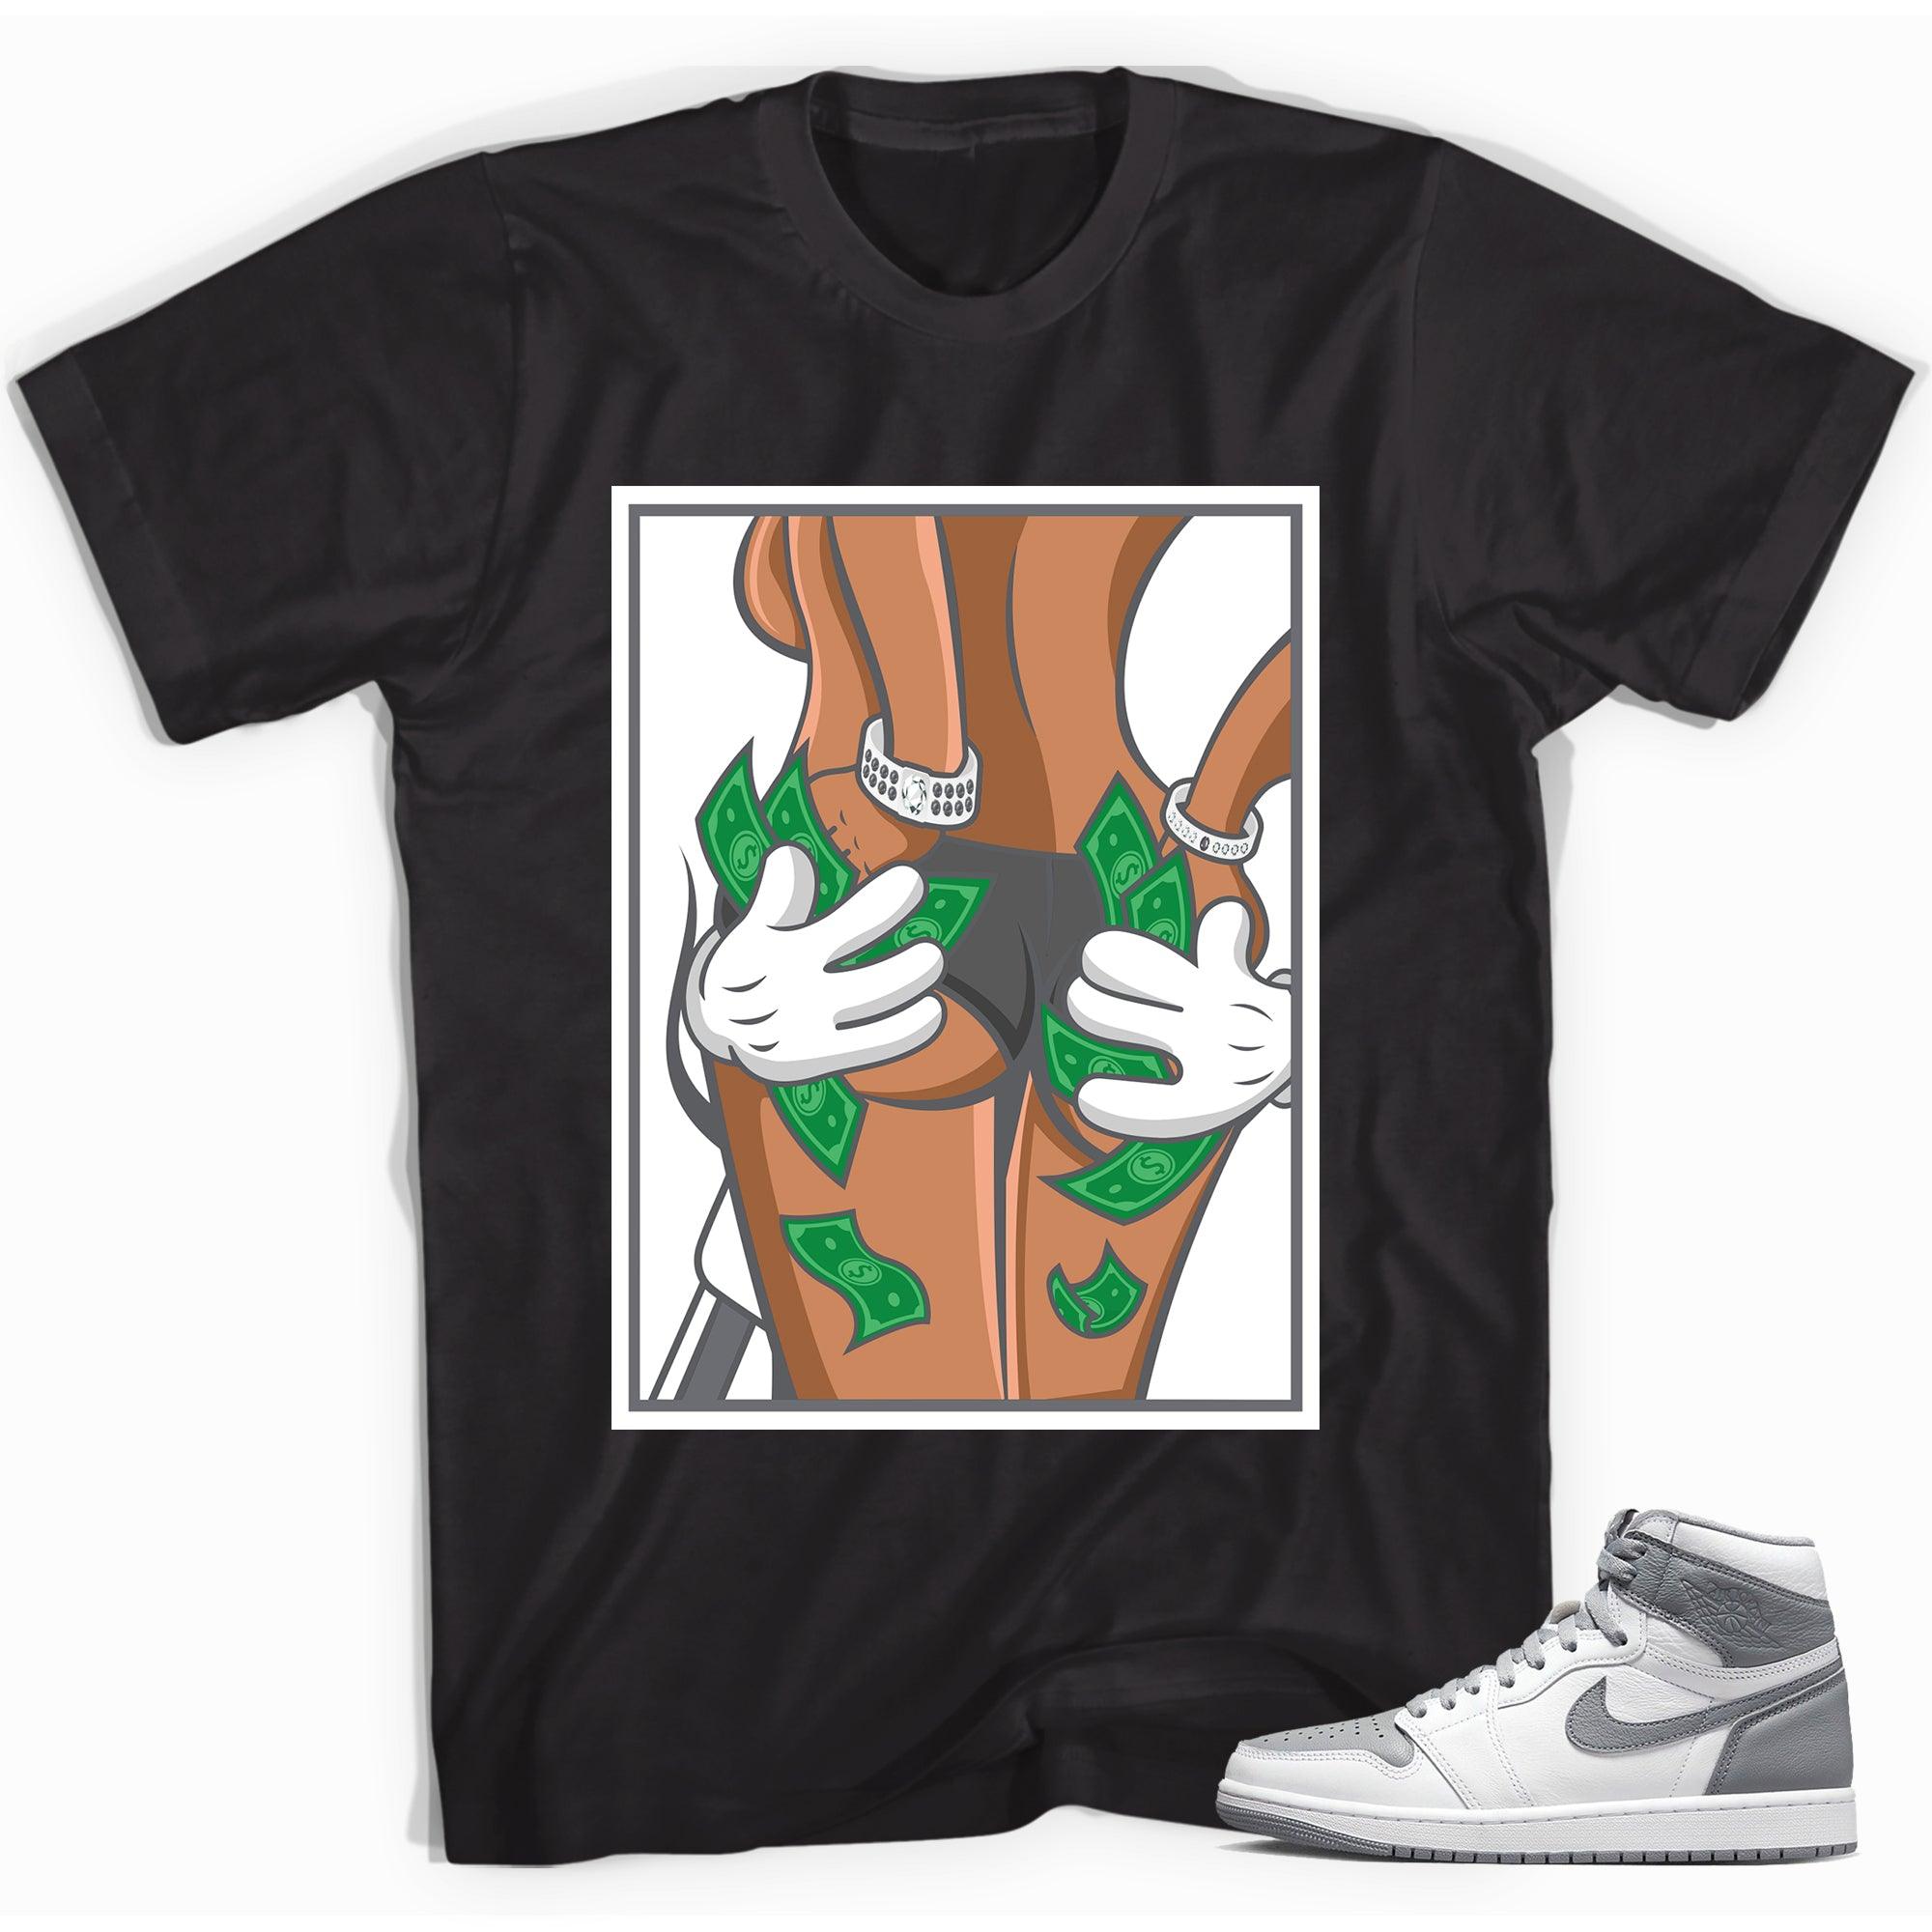 Money Honey Sneaker Shirt for Jordan 1s photo